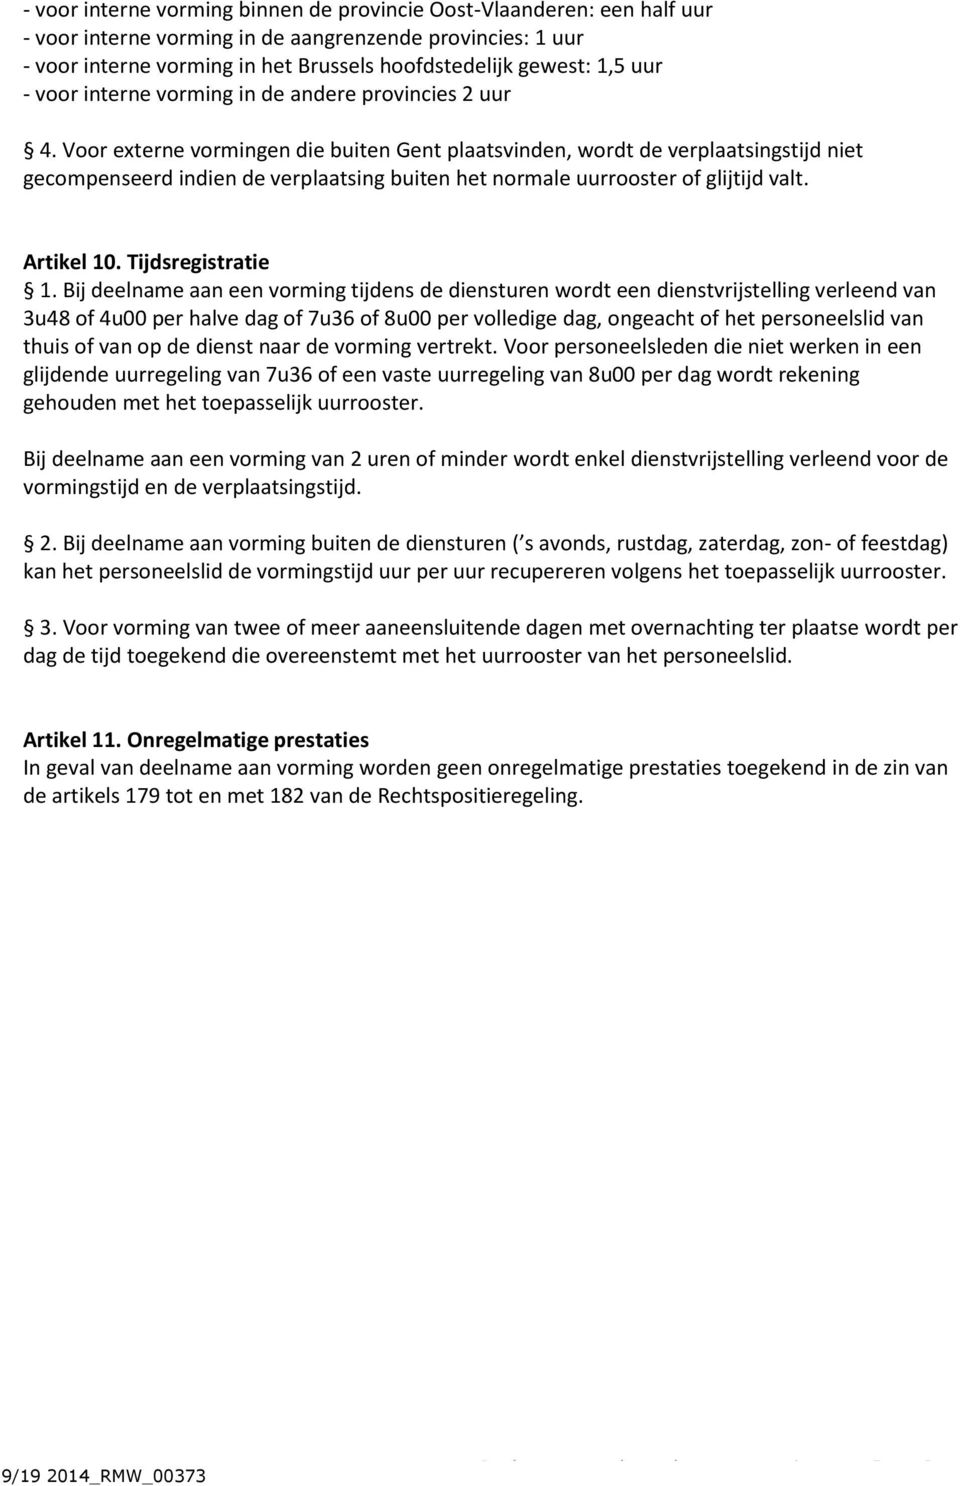 Voor externe vormingen die buiten Gent plaatsvinden, wordt de verplaatsingstijd niet gecompenseerd indien de verplaatsing buiten het normale uurrooster of glijtijd valt. Artikel 10.